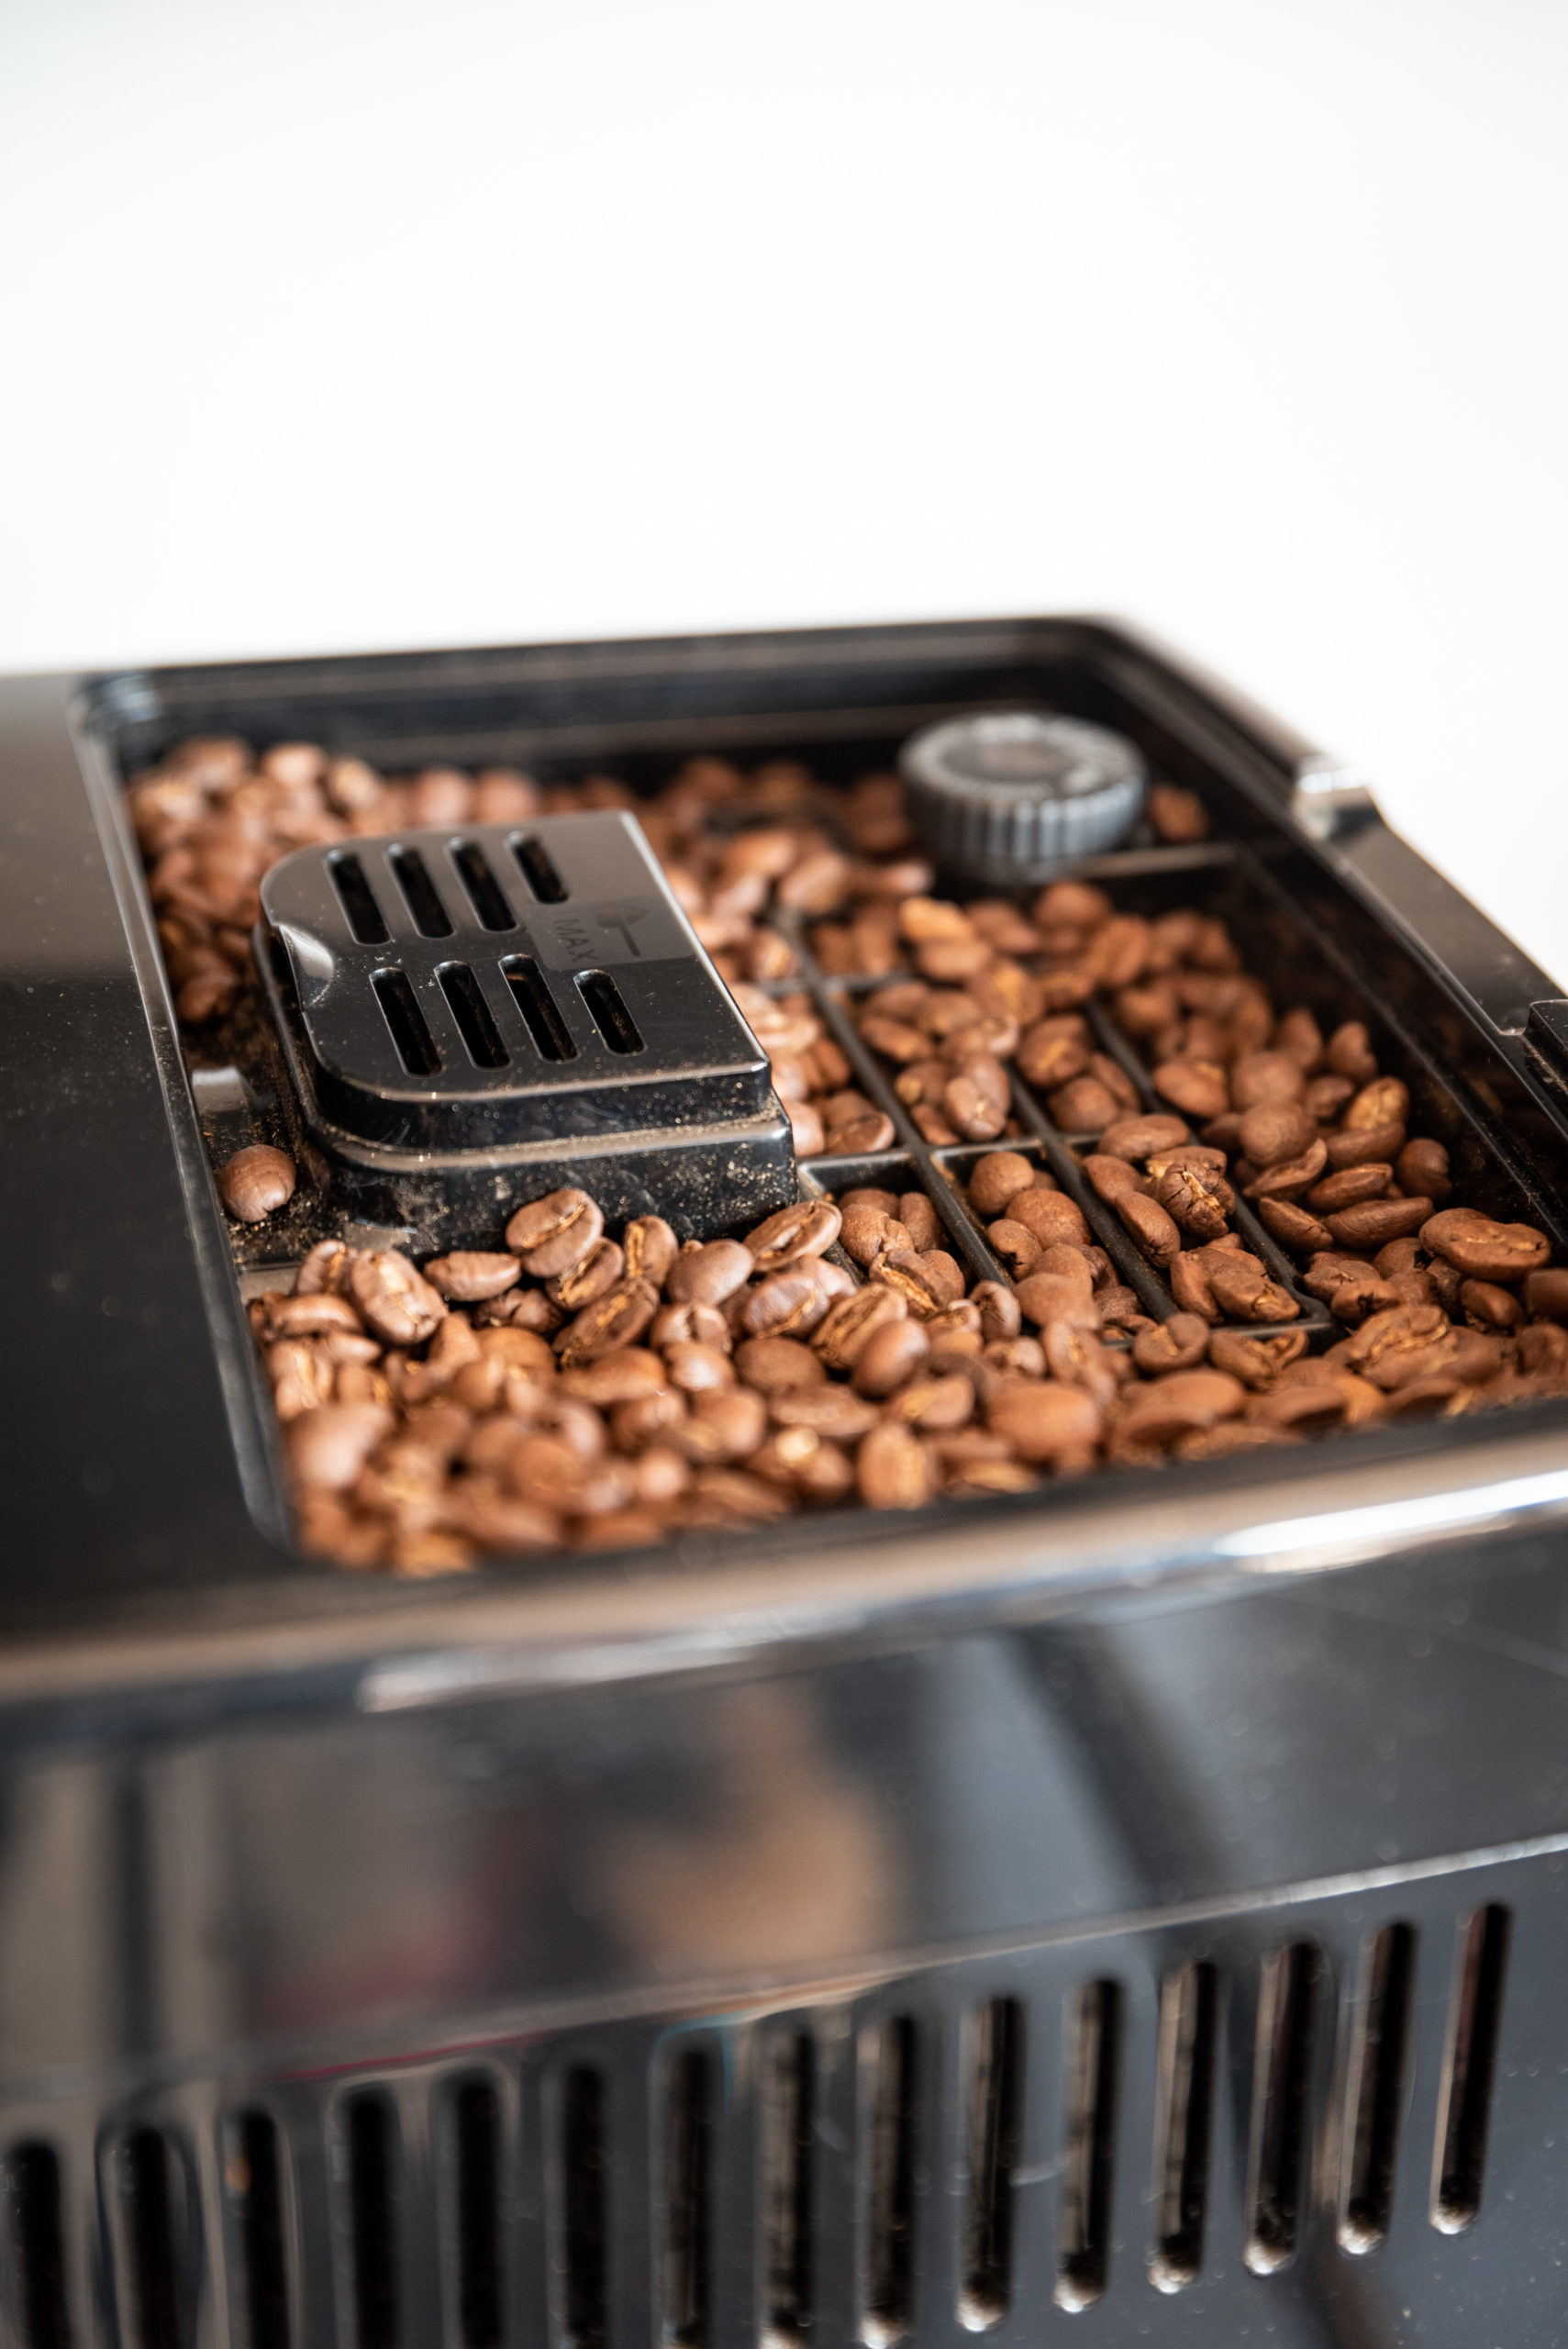 Delonghi Dinamica FEB3535.SB- machine à café automatique à grain